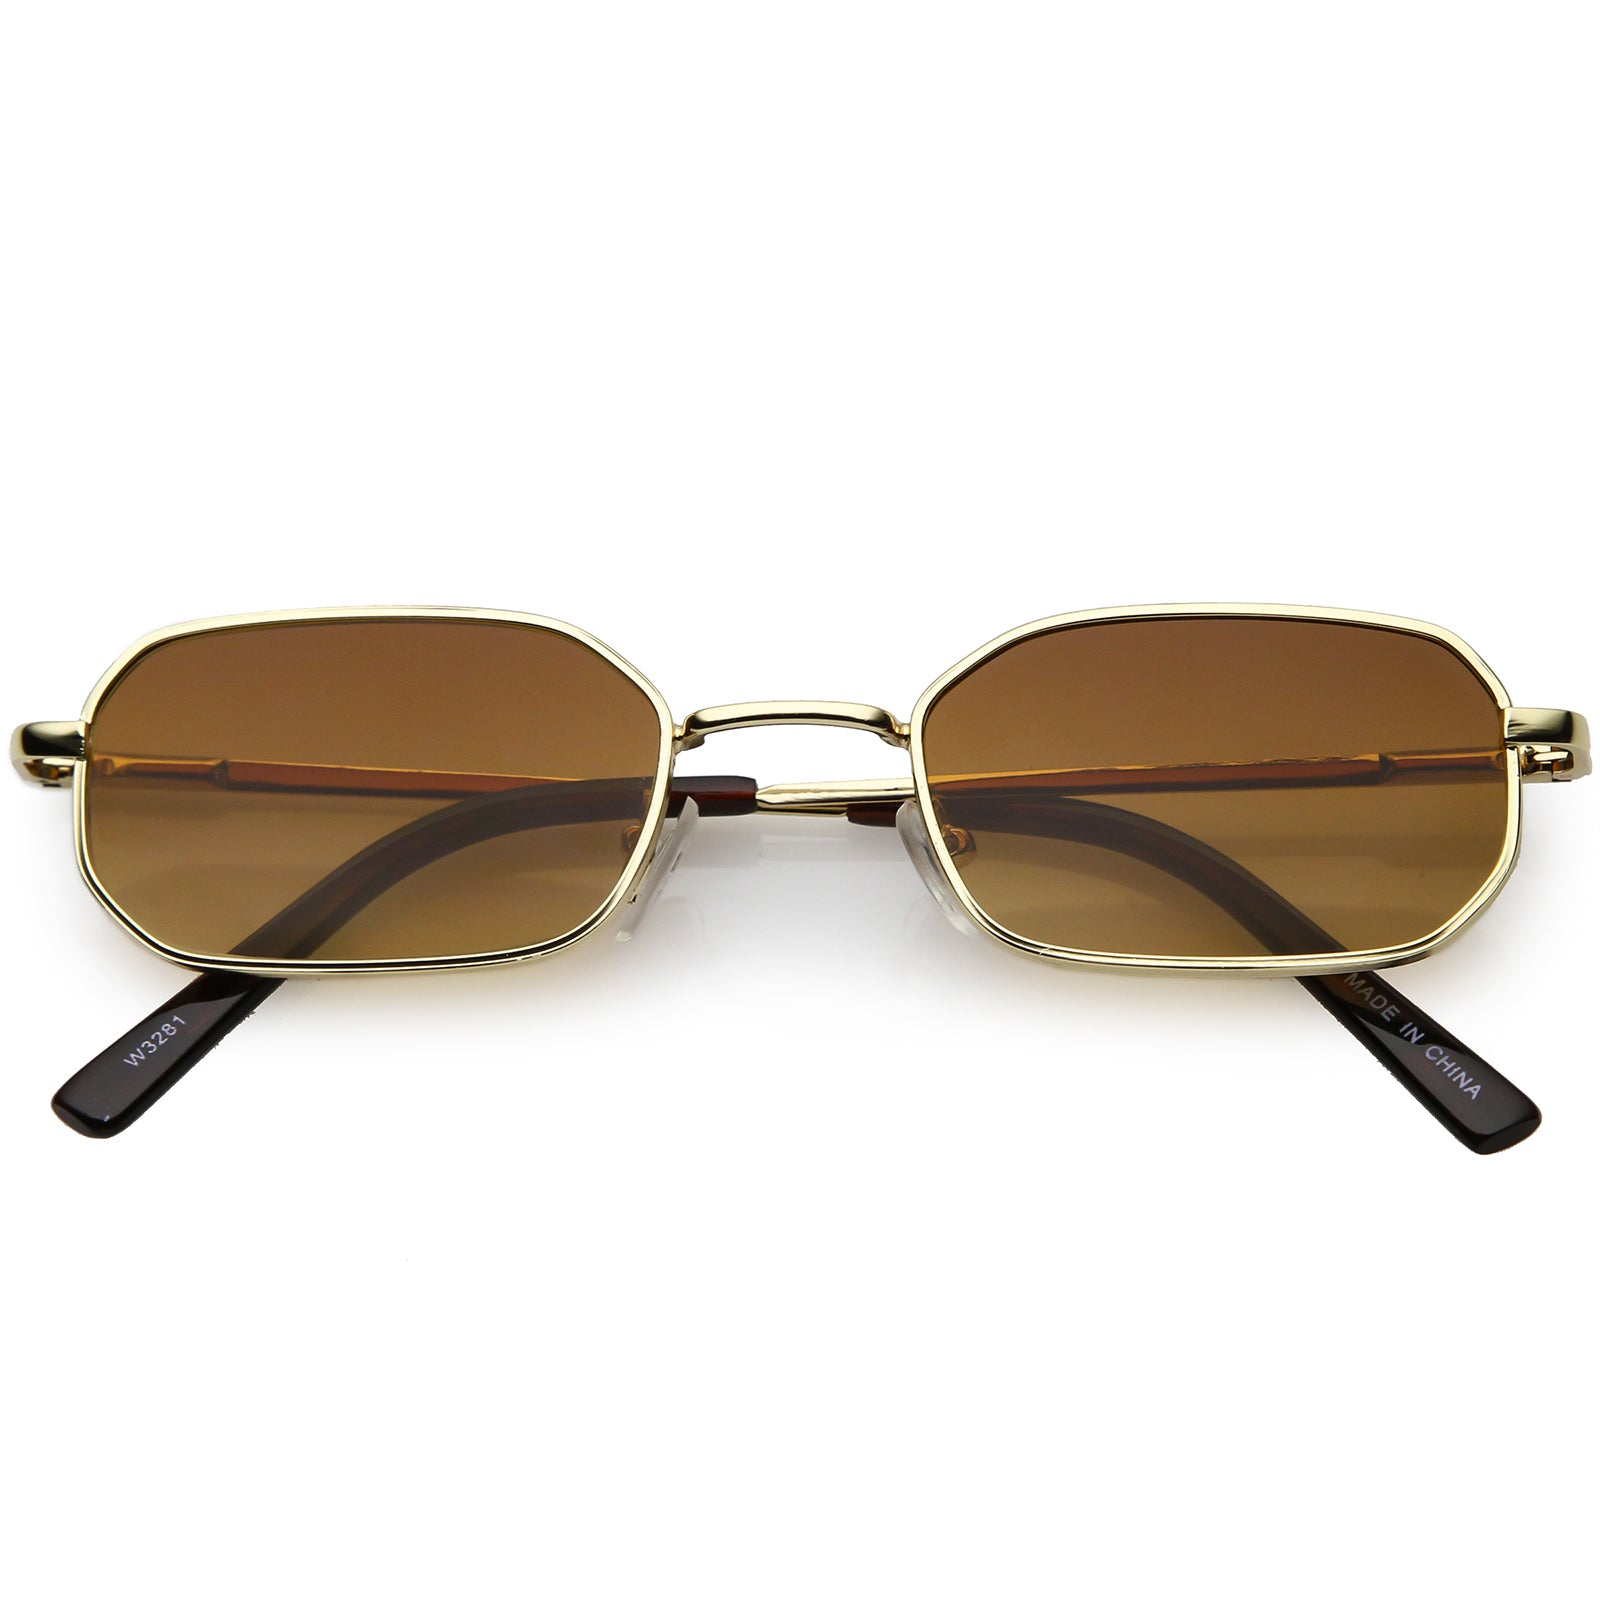 chanel a71280 sunglasses